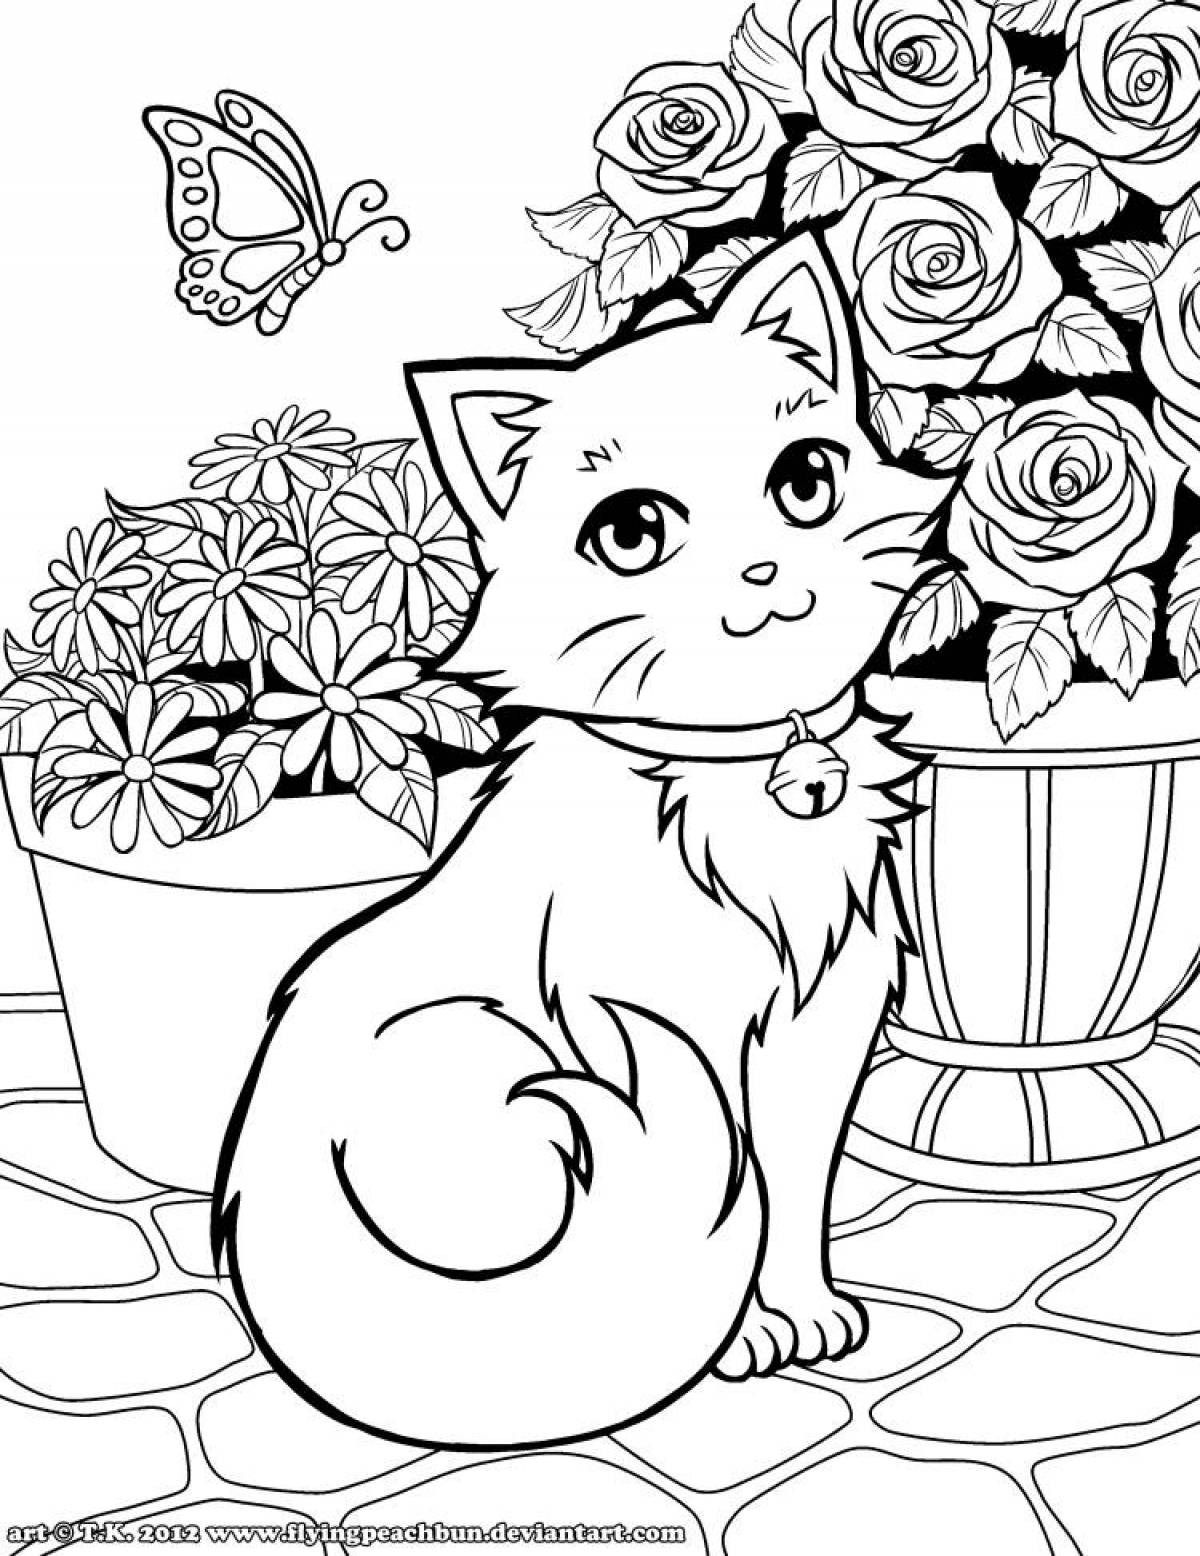 Cute cat girl coloring book